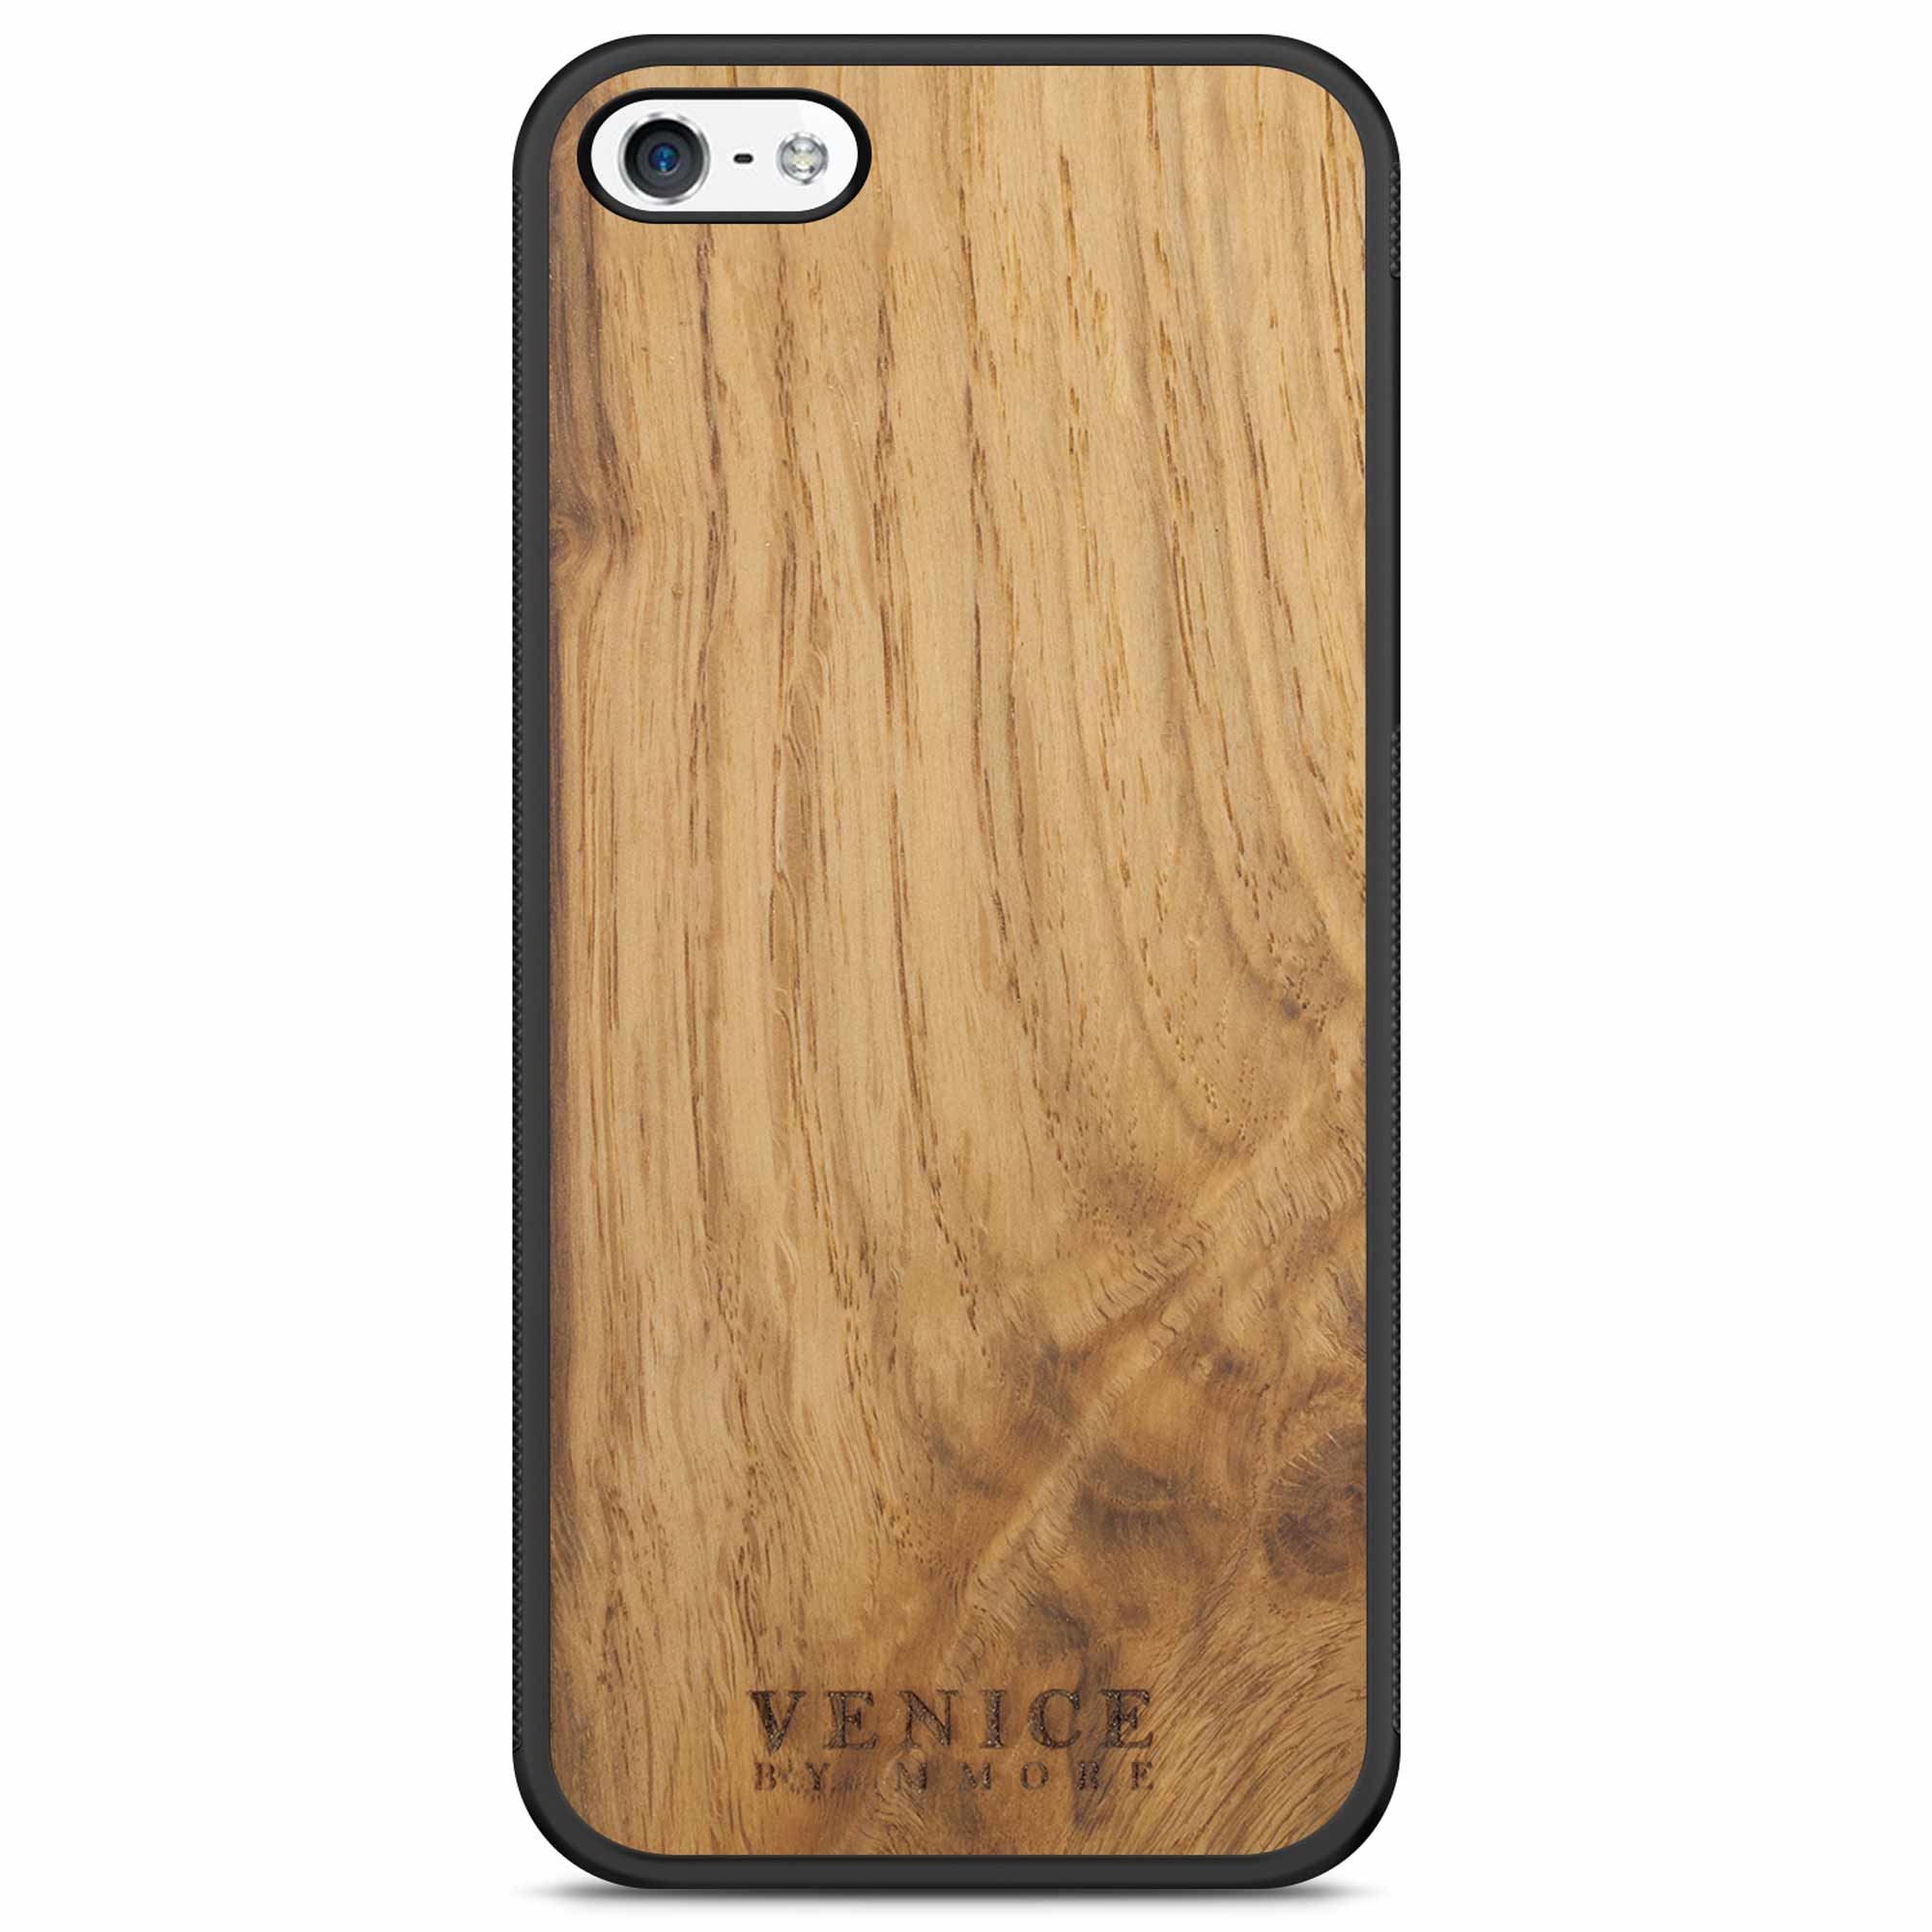 Деревянный чехол для телефона с надписью Venice для iPhone 5